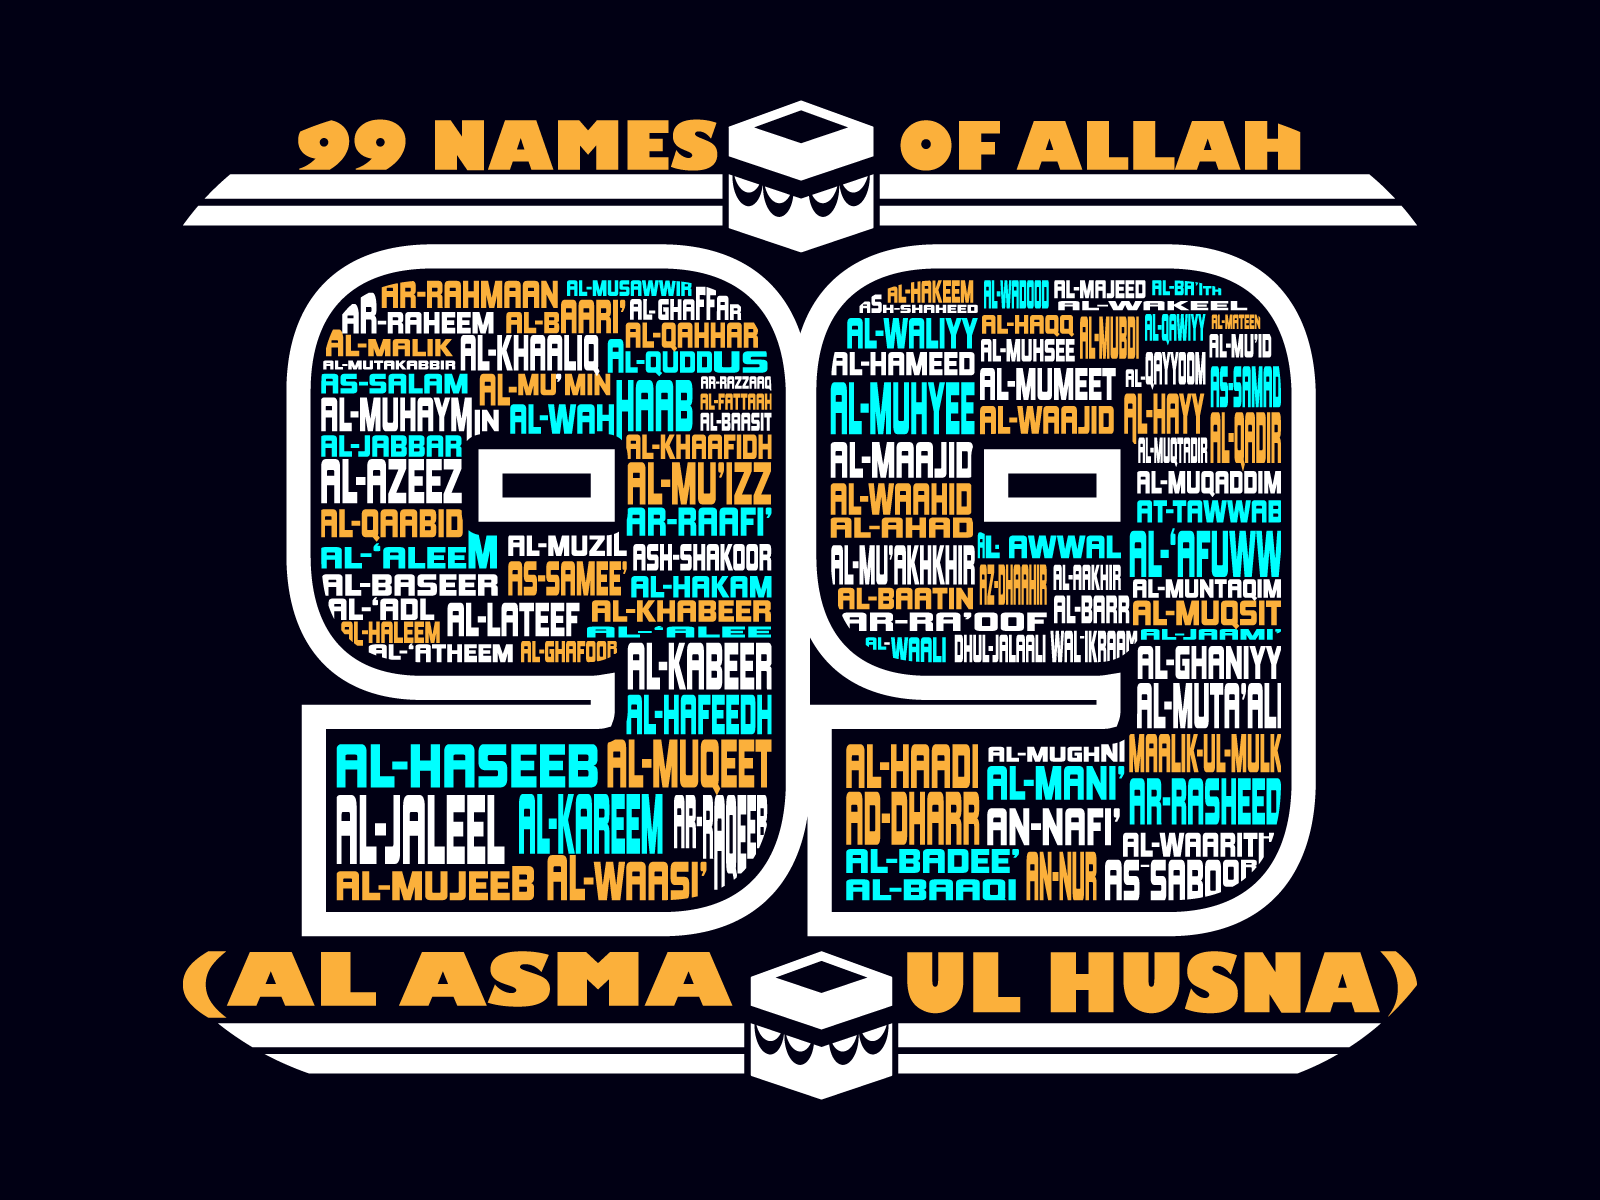 99 name of allah in english